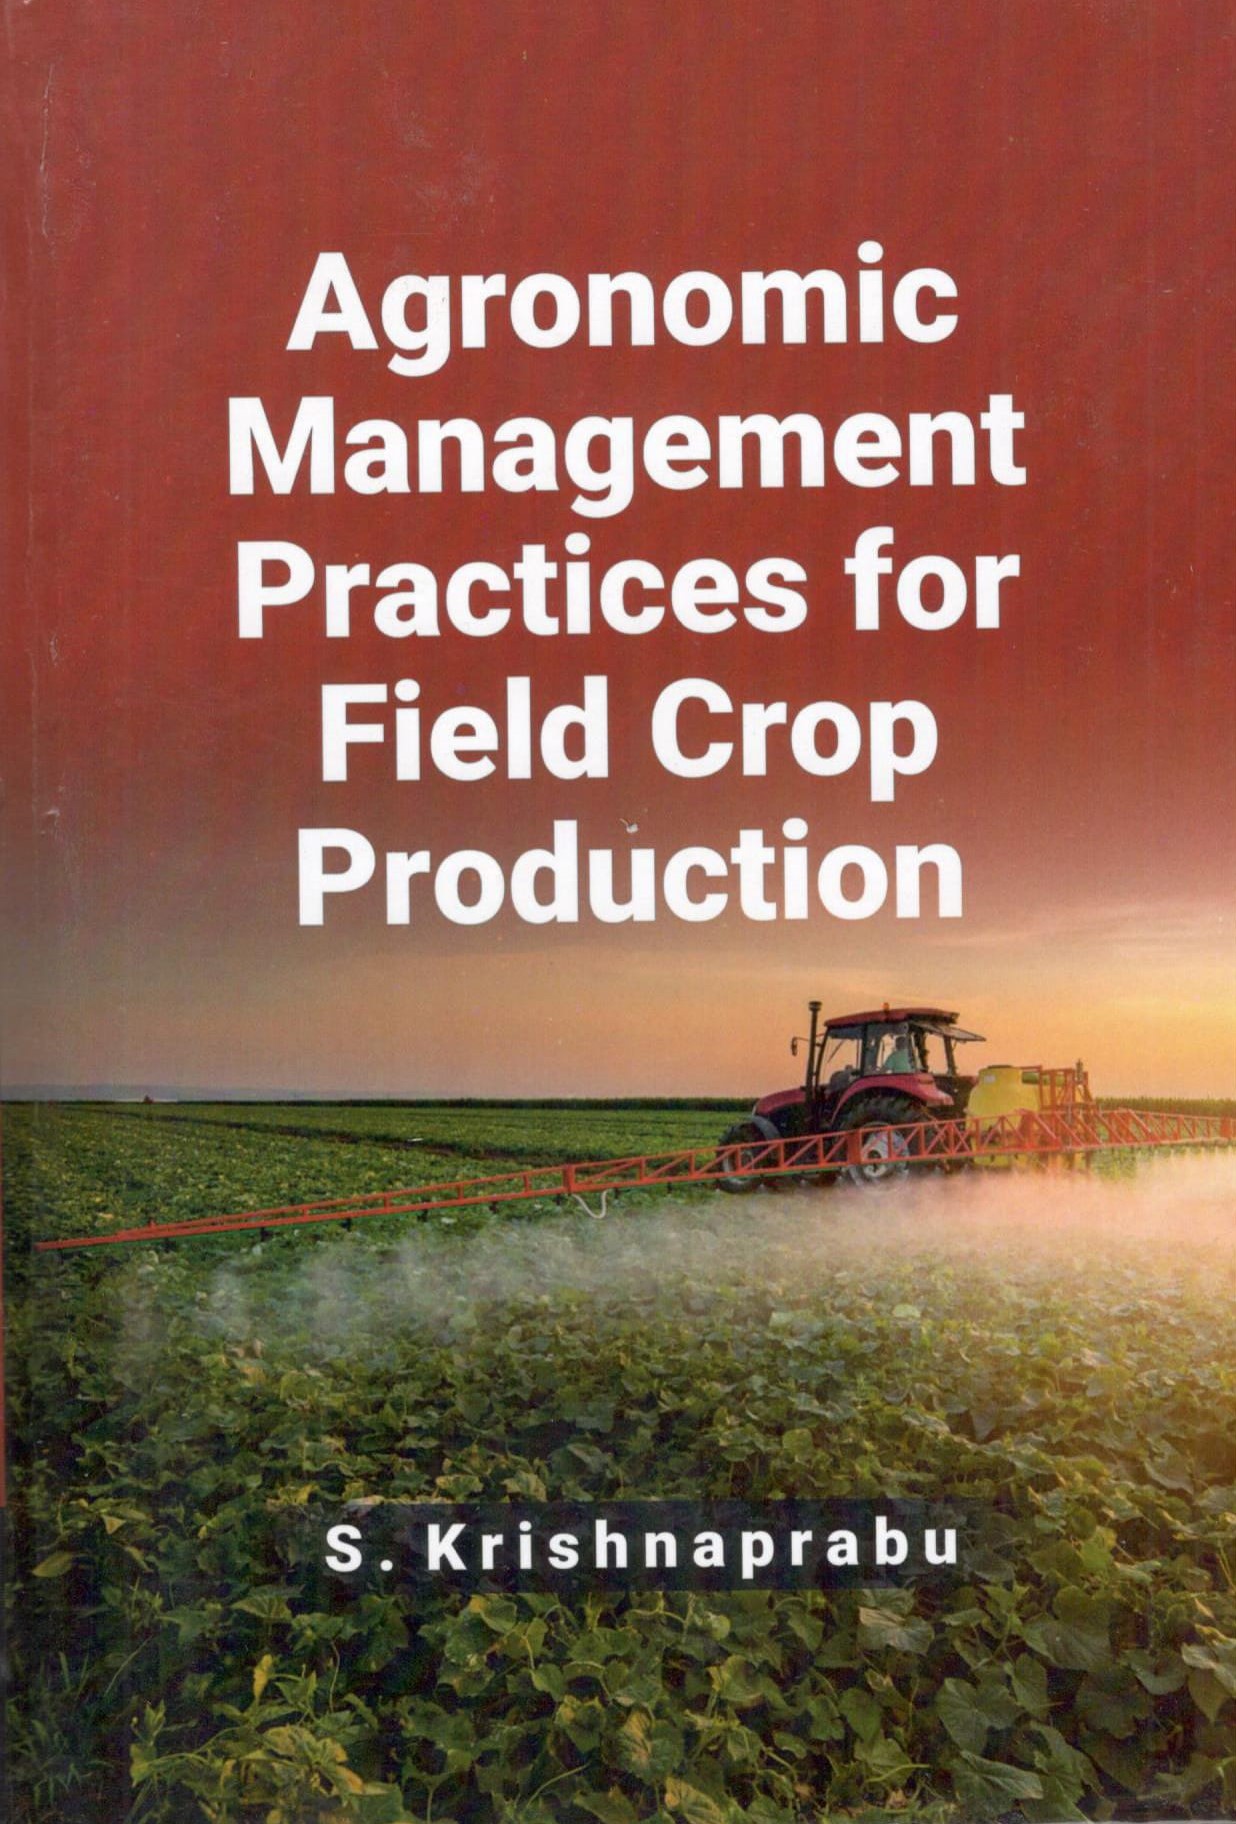 crop production business plan pdf